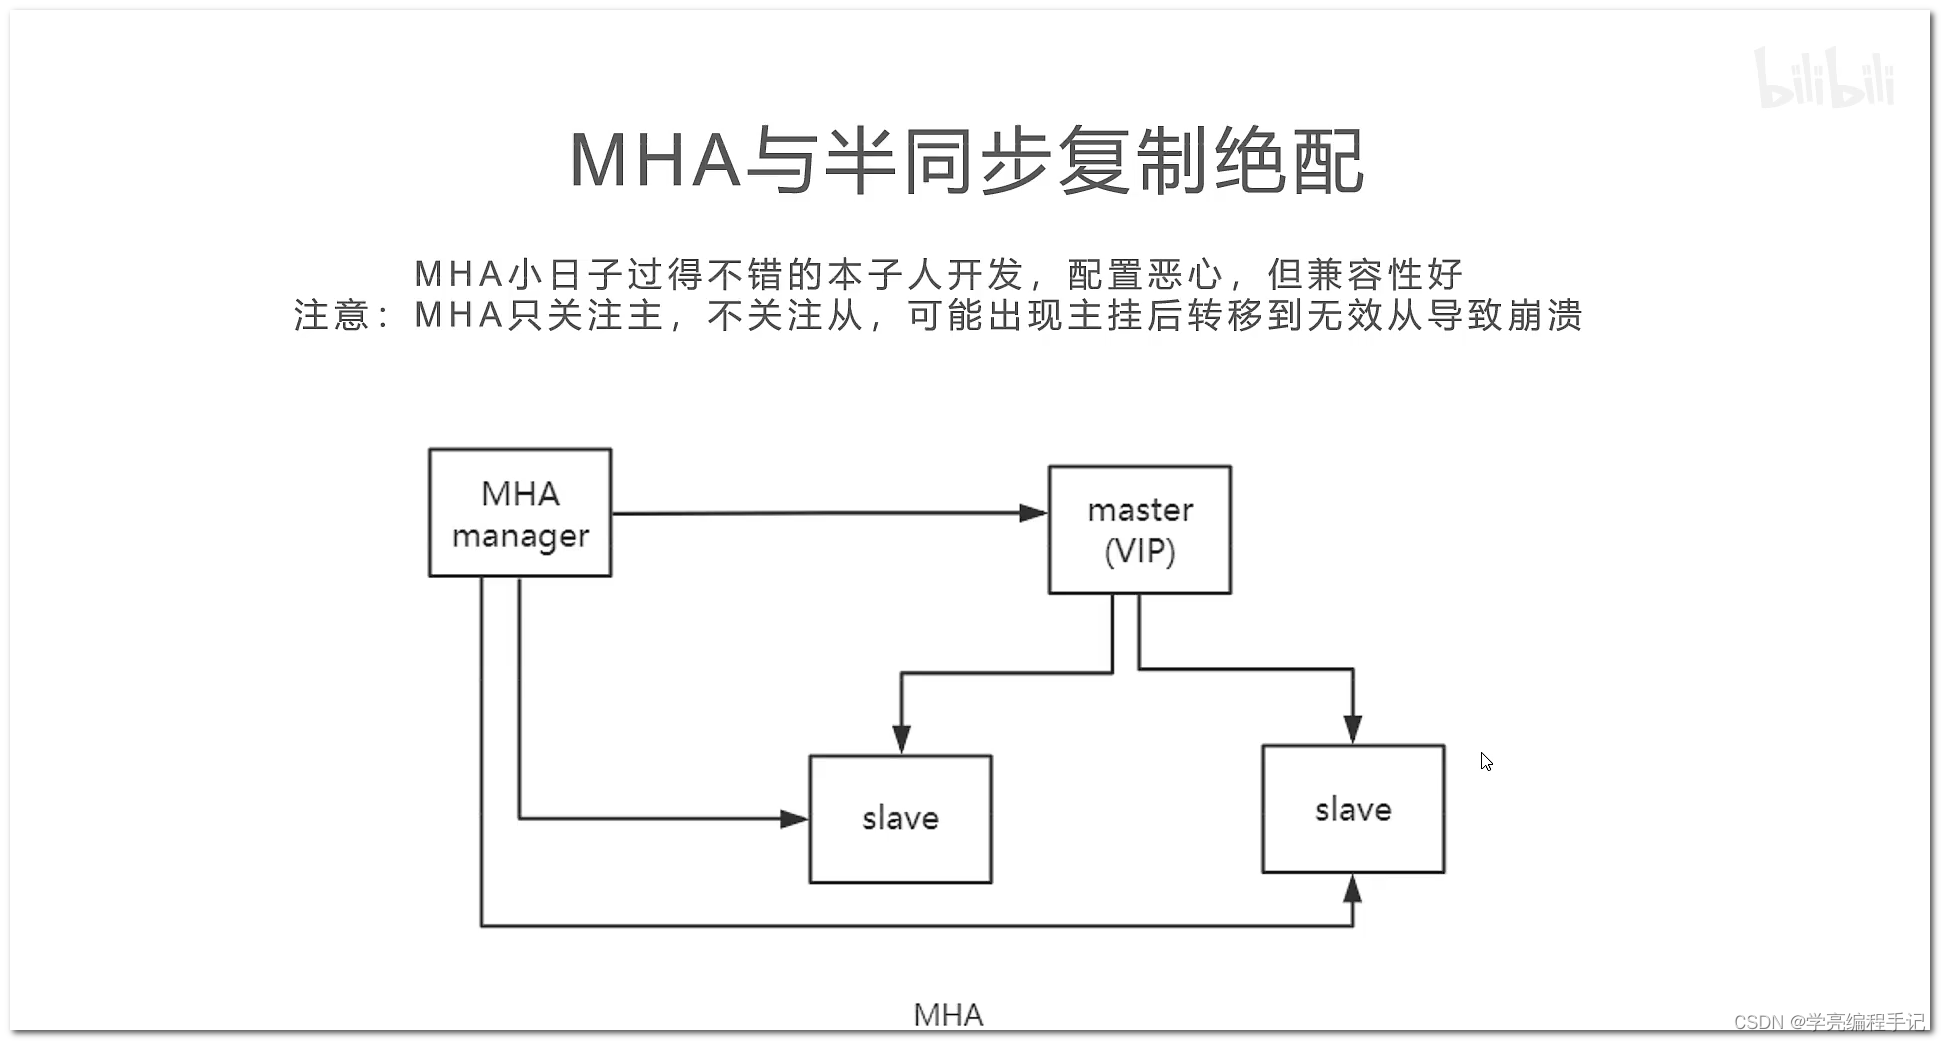 MySQL主从复制方案技术选型：MHA MGR等_同步复制_04